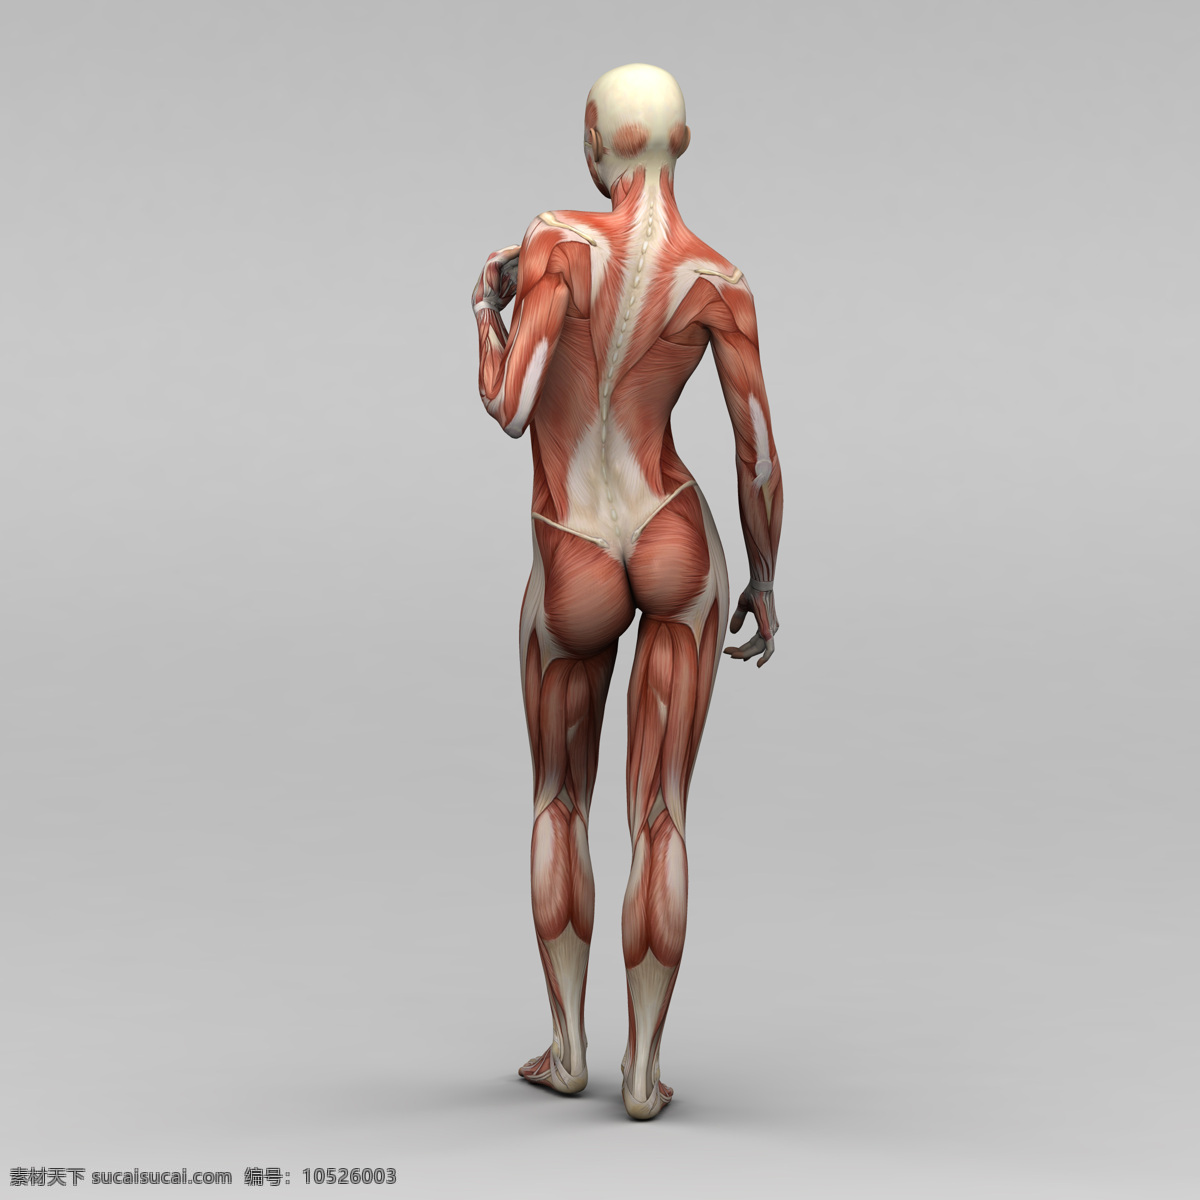 女性 背部 肌肉 组织 人体 素描画 人体肌肉器官 肌肉结构 人体解剖学 人体器官 人体器官图 人物图片